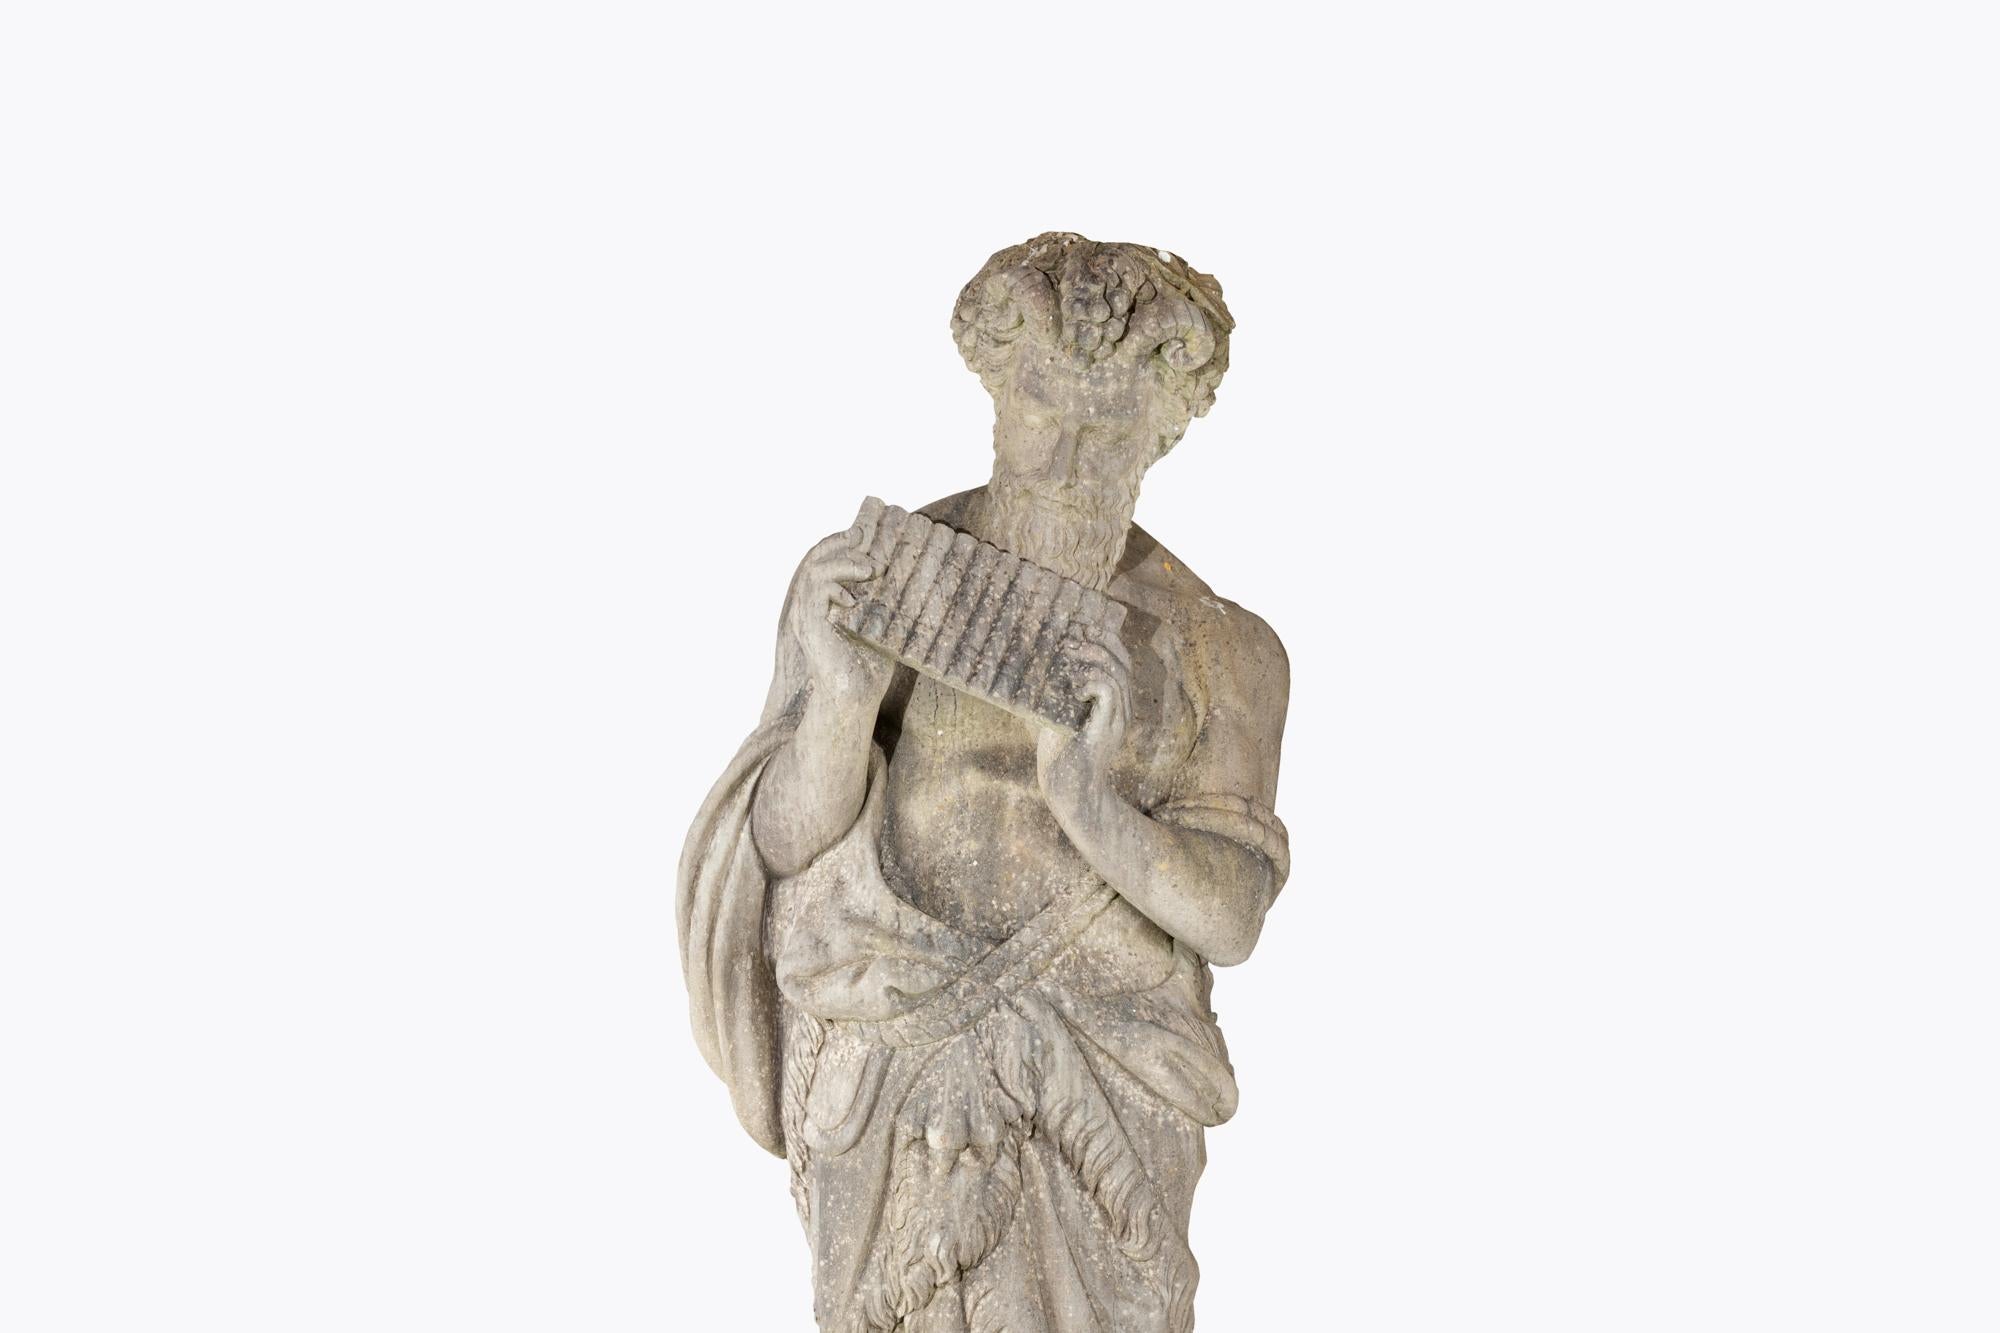 sculpture en pierre calcaire du XVIIIe siècle représentant la figure mythologique de Pan.
Dans la mythologie grecque ancienne, Pan est le dieu de la nature, protecteur des bergers et des troupeaux. Son nom trouve son origine dans la langue grecque